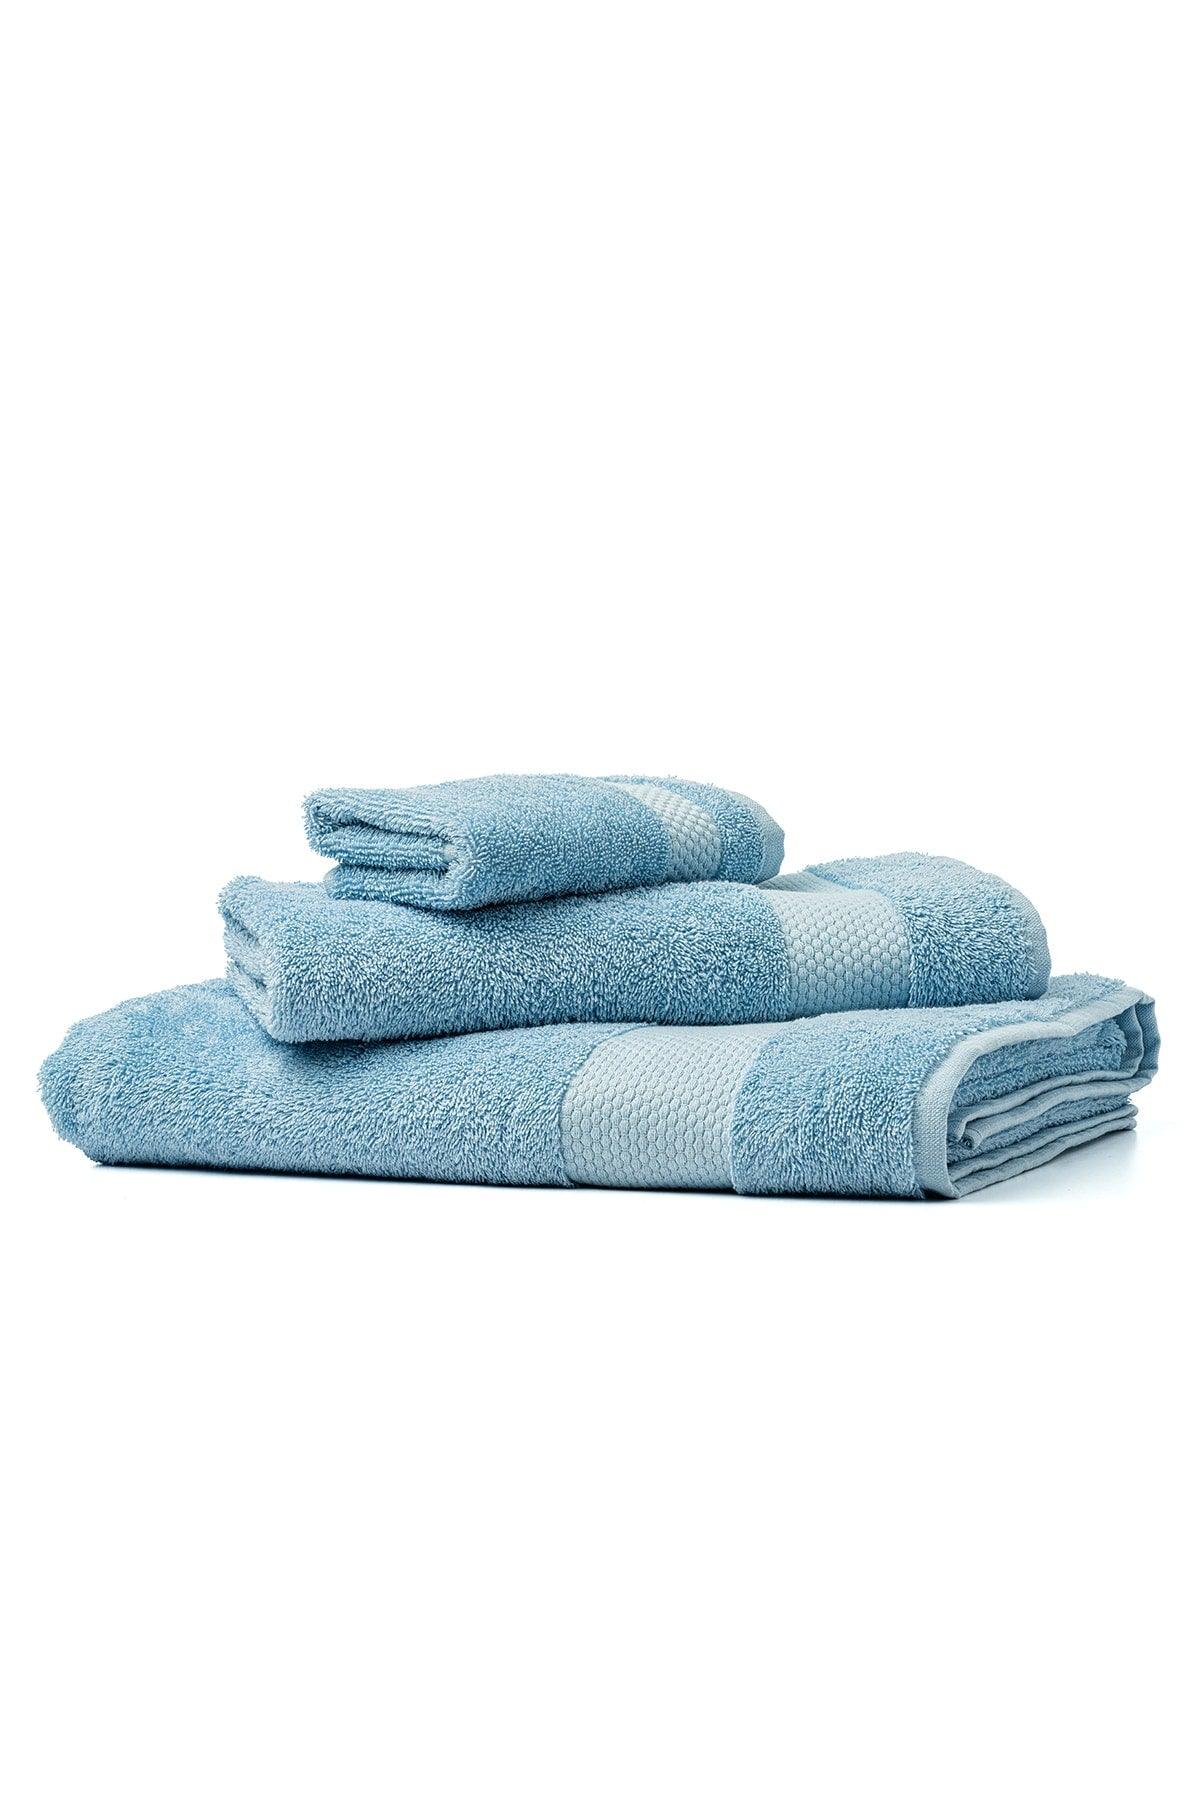 | Minerva | 100% Cotton Set of 2 Extra Soft Hand / Head Towels - Swordslife